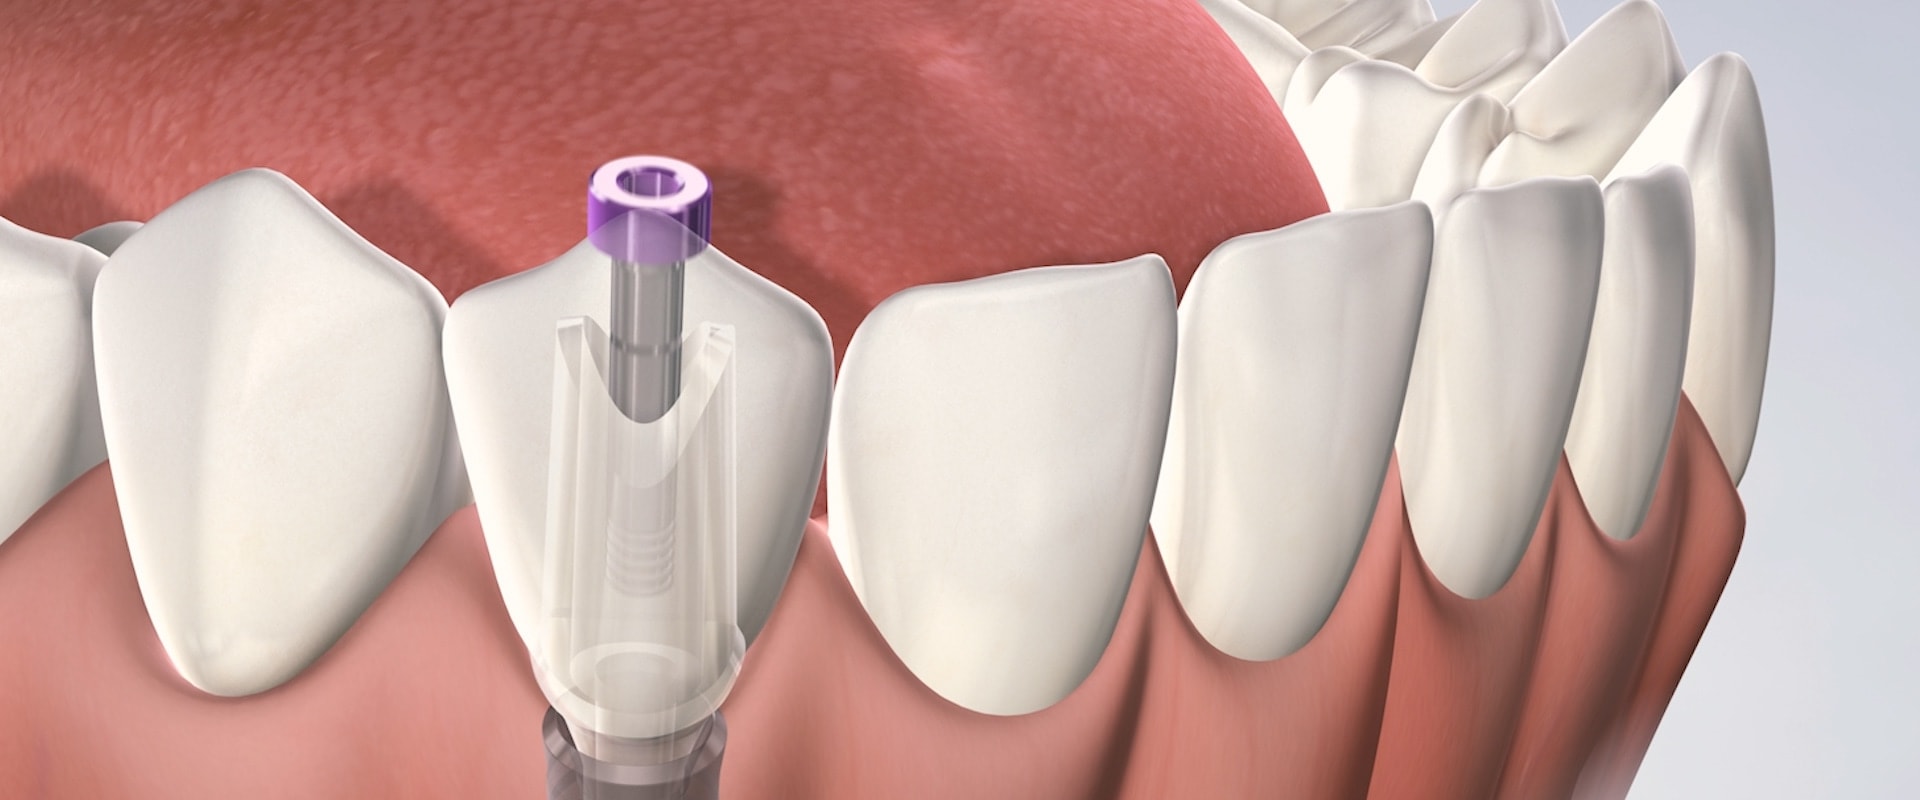 How long do dental implants hurt?